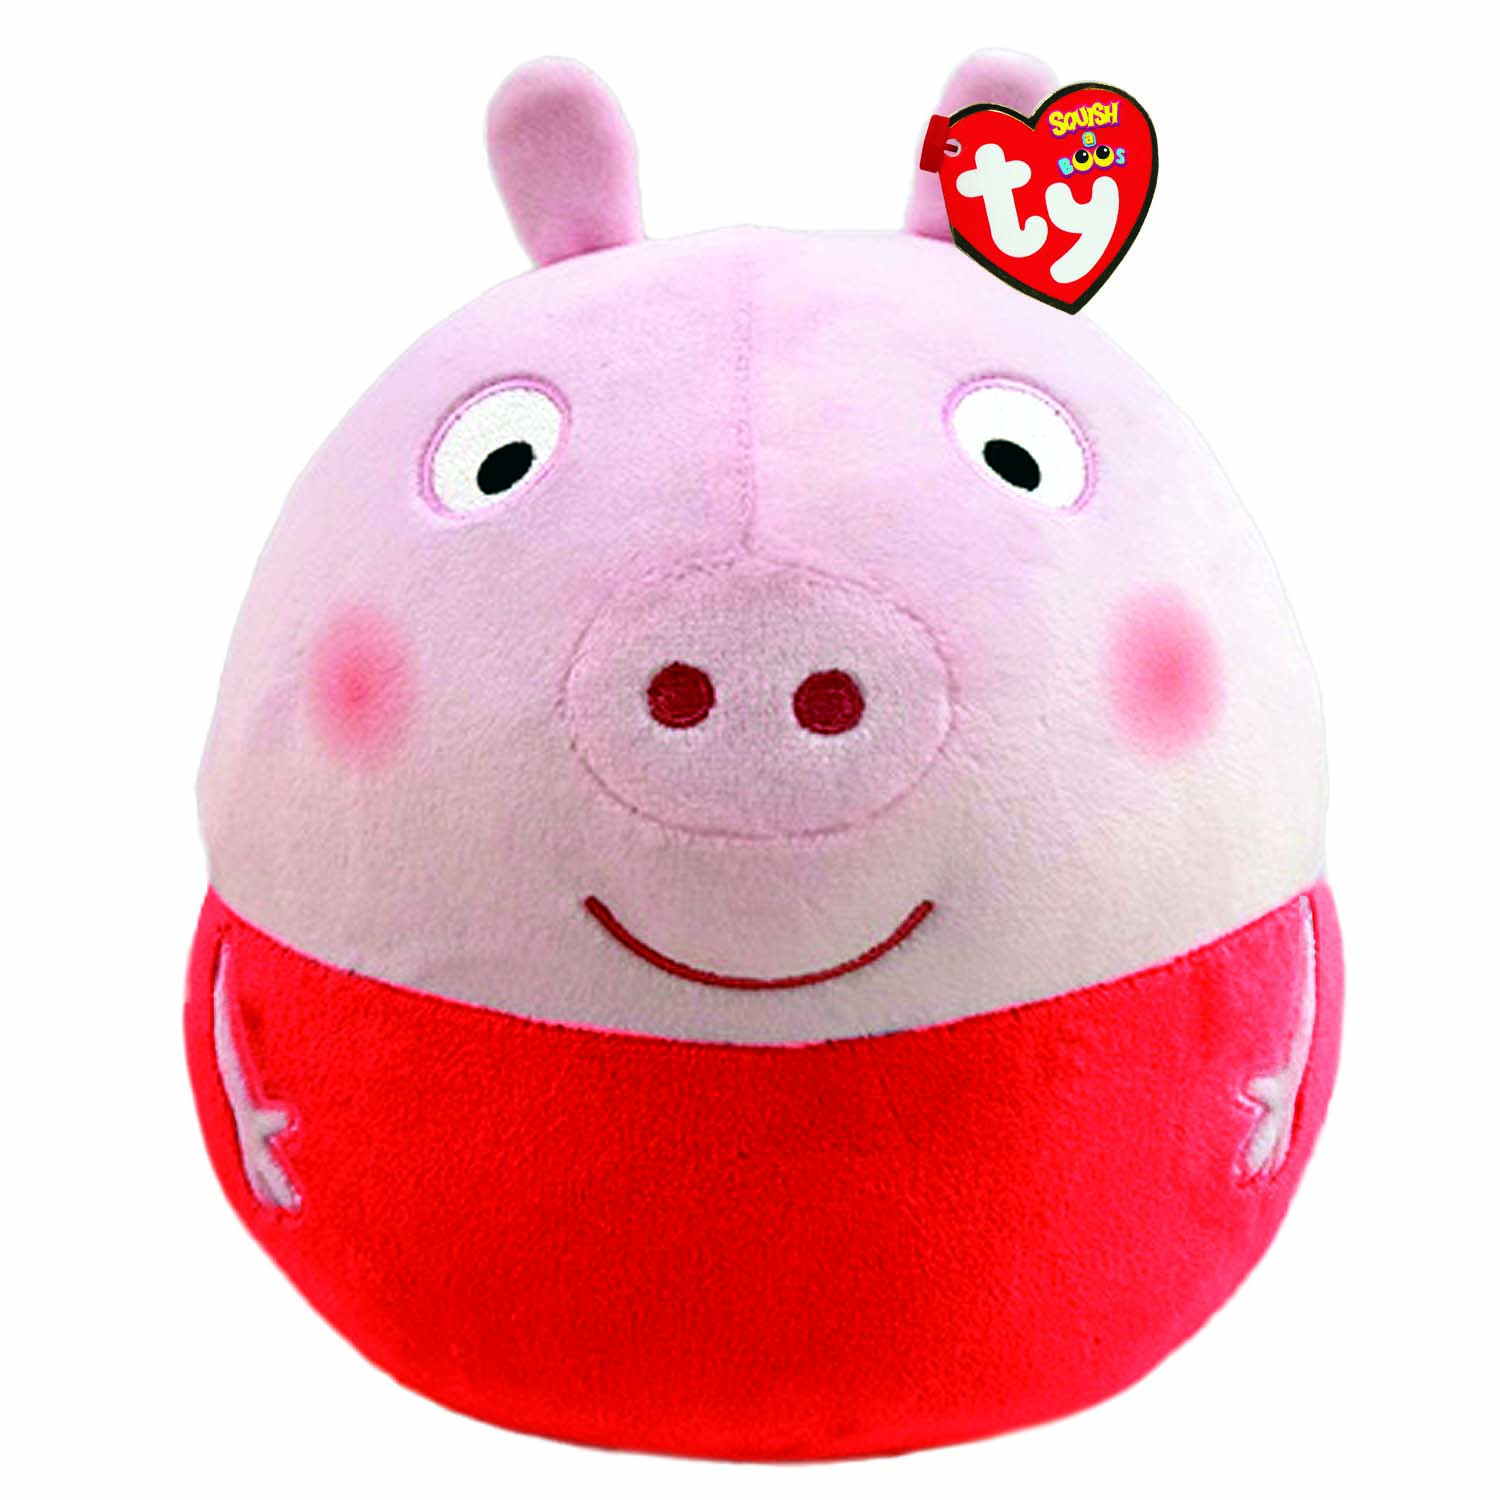 PEPPA PIG Peppa Pig Squish Kissen Plüschtier cm Peppa, 20